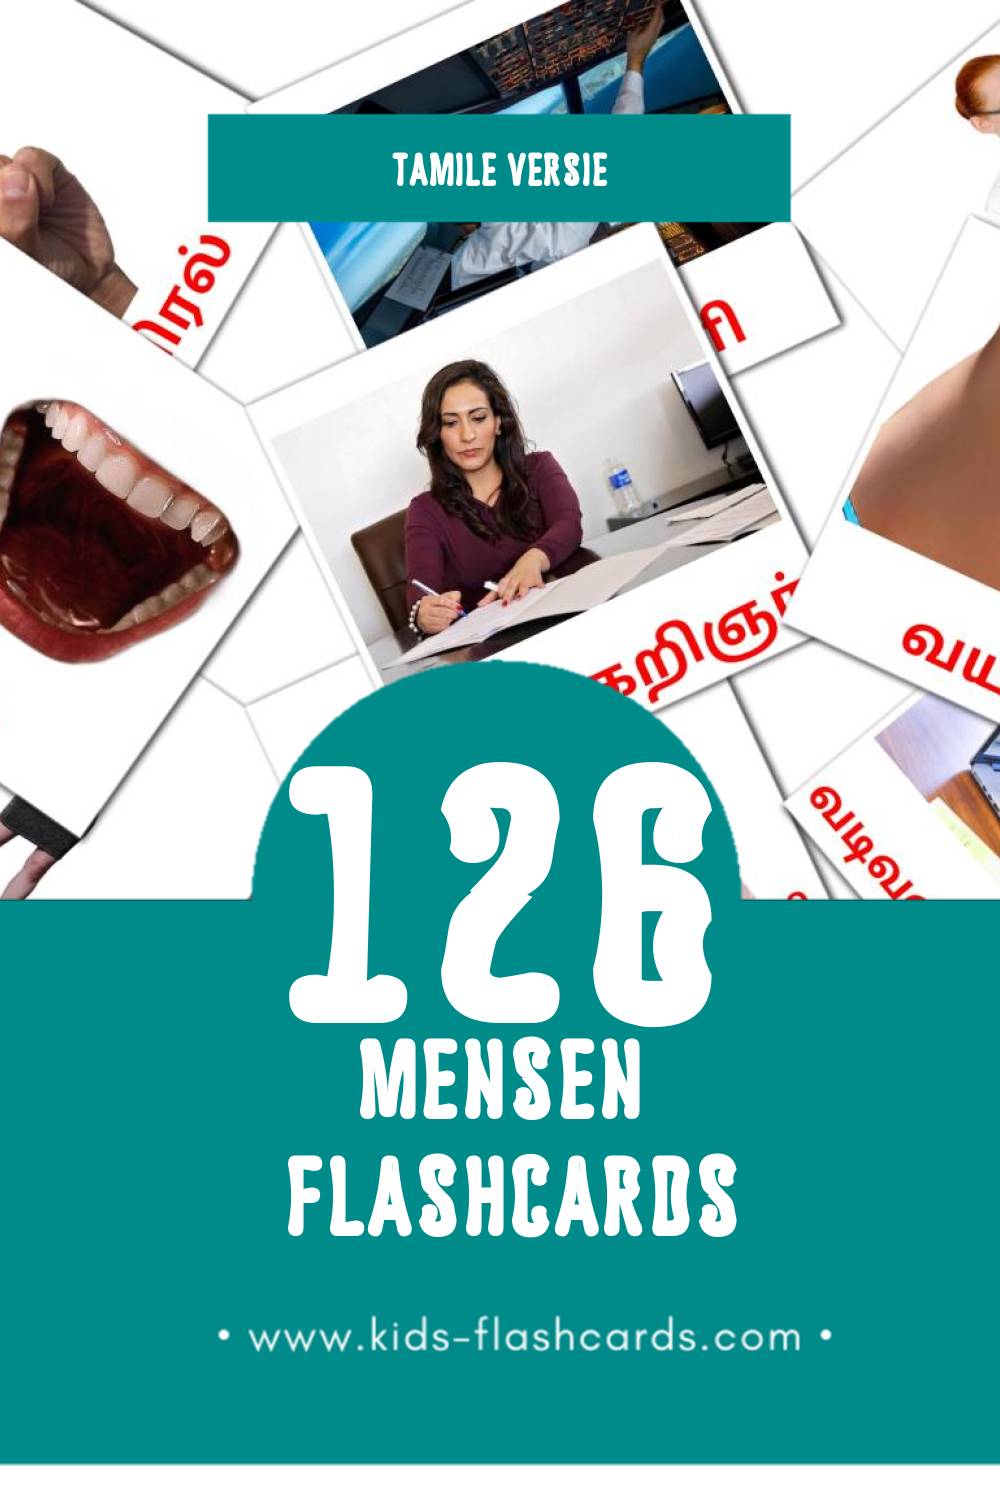 Visuele மக்கள் Flashcards voor Kleuters (126 kaarten in het Tamil)